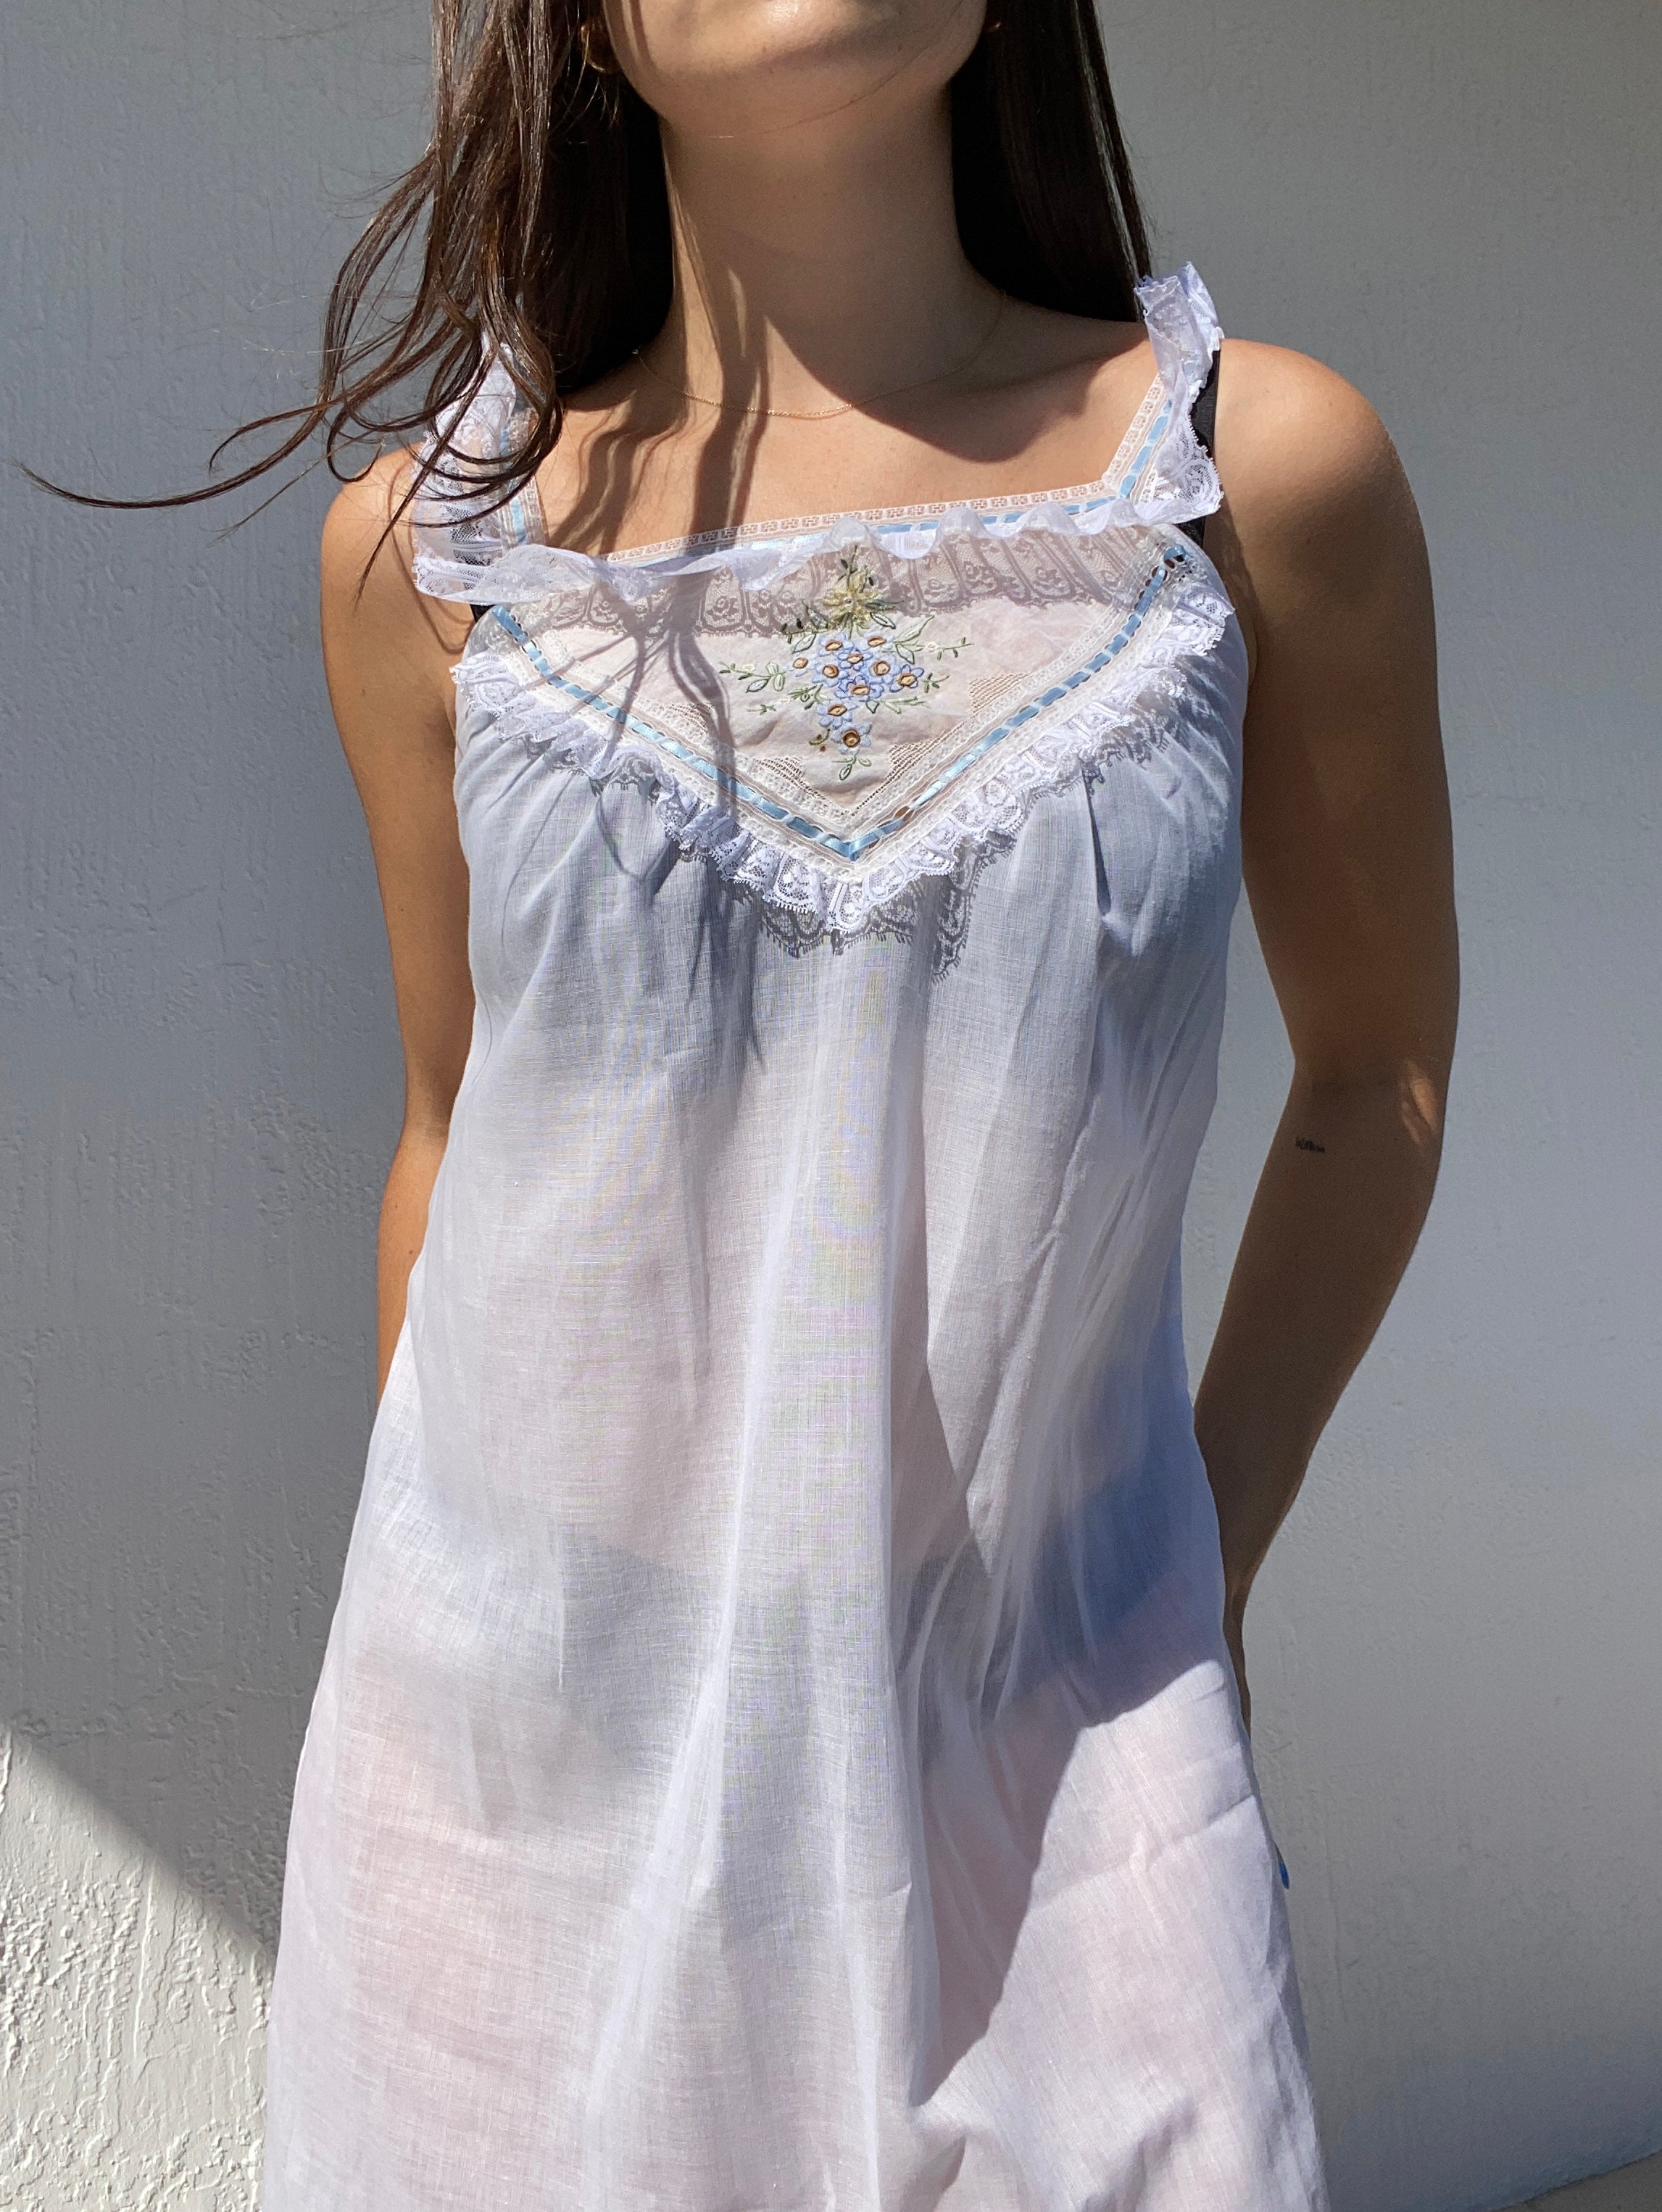 Bert Yelin for Iris Sheer Embroidered Slip Dress